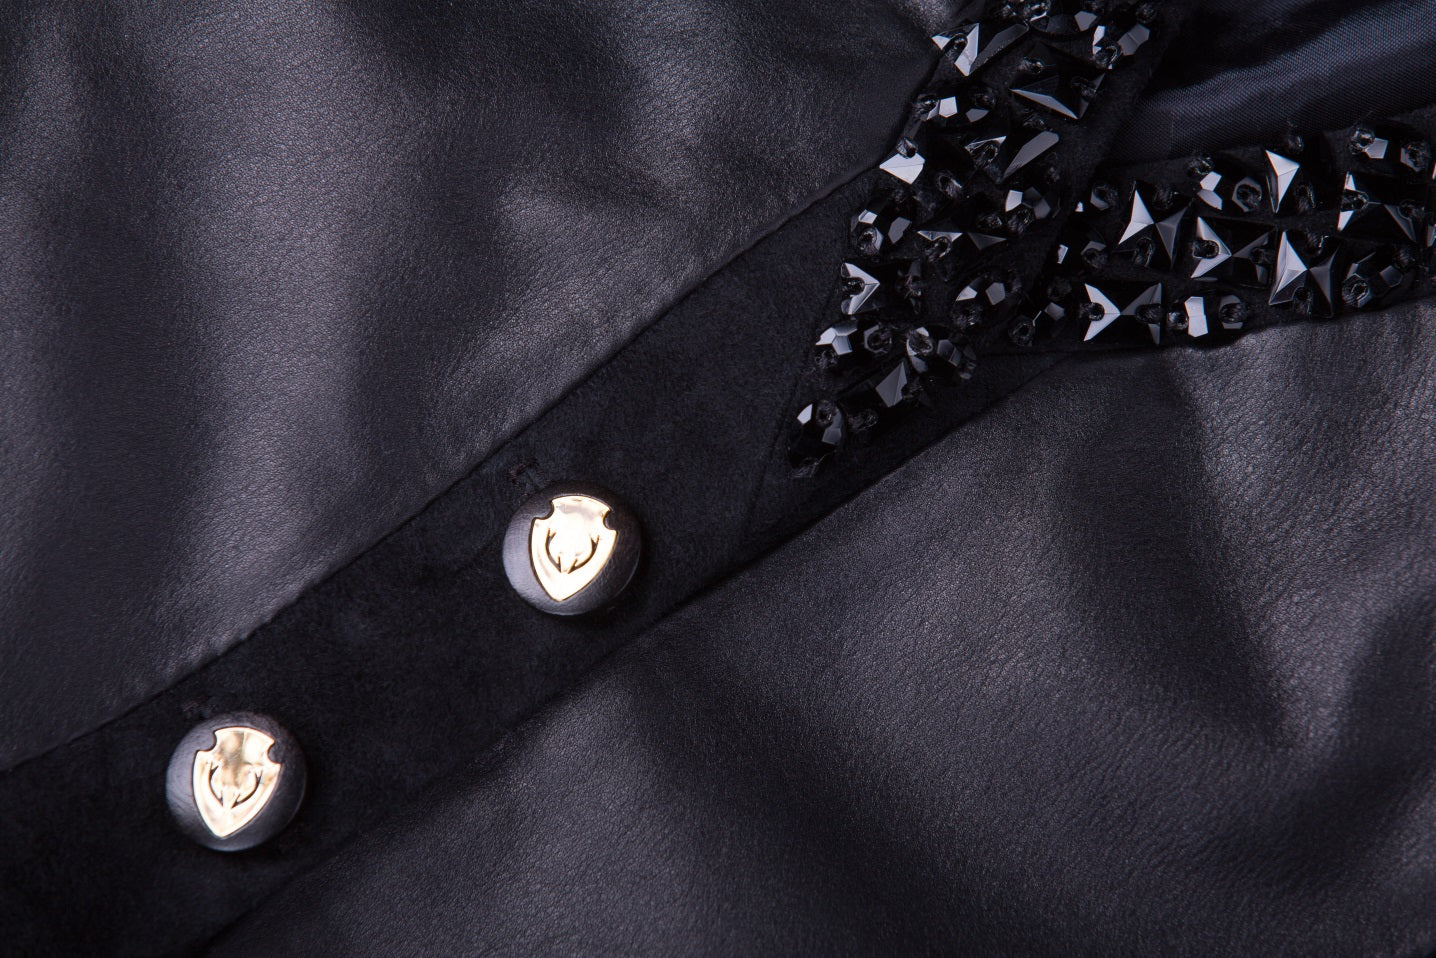 Black Rhinestones Reindeer Leather Jacket Limited Edition